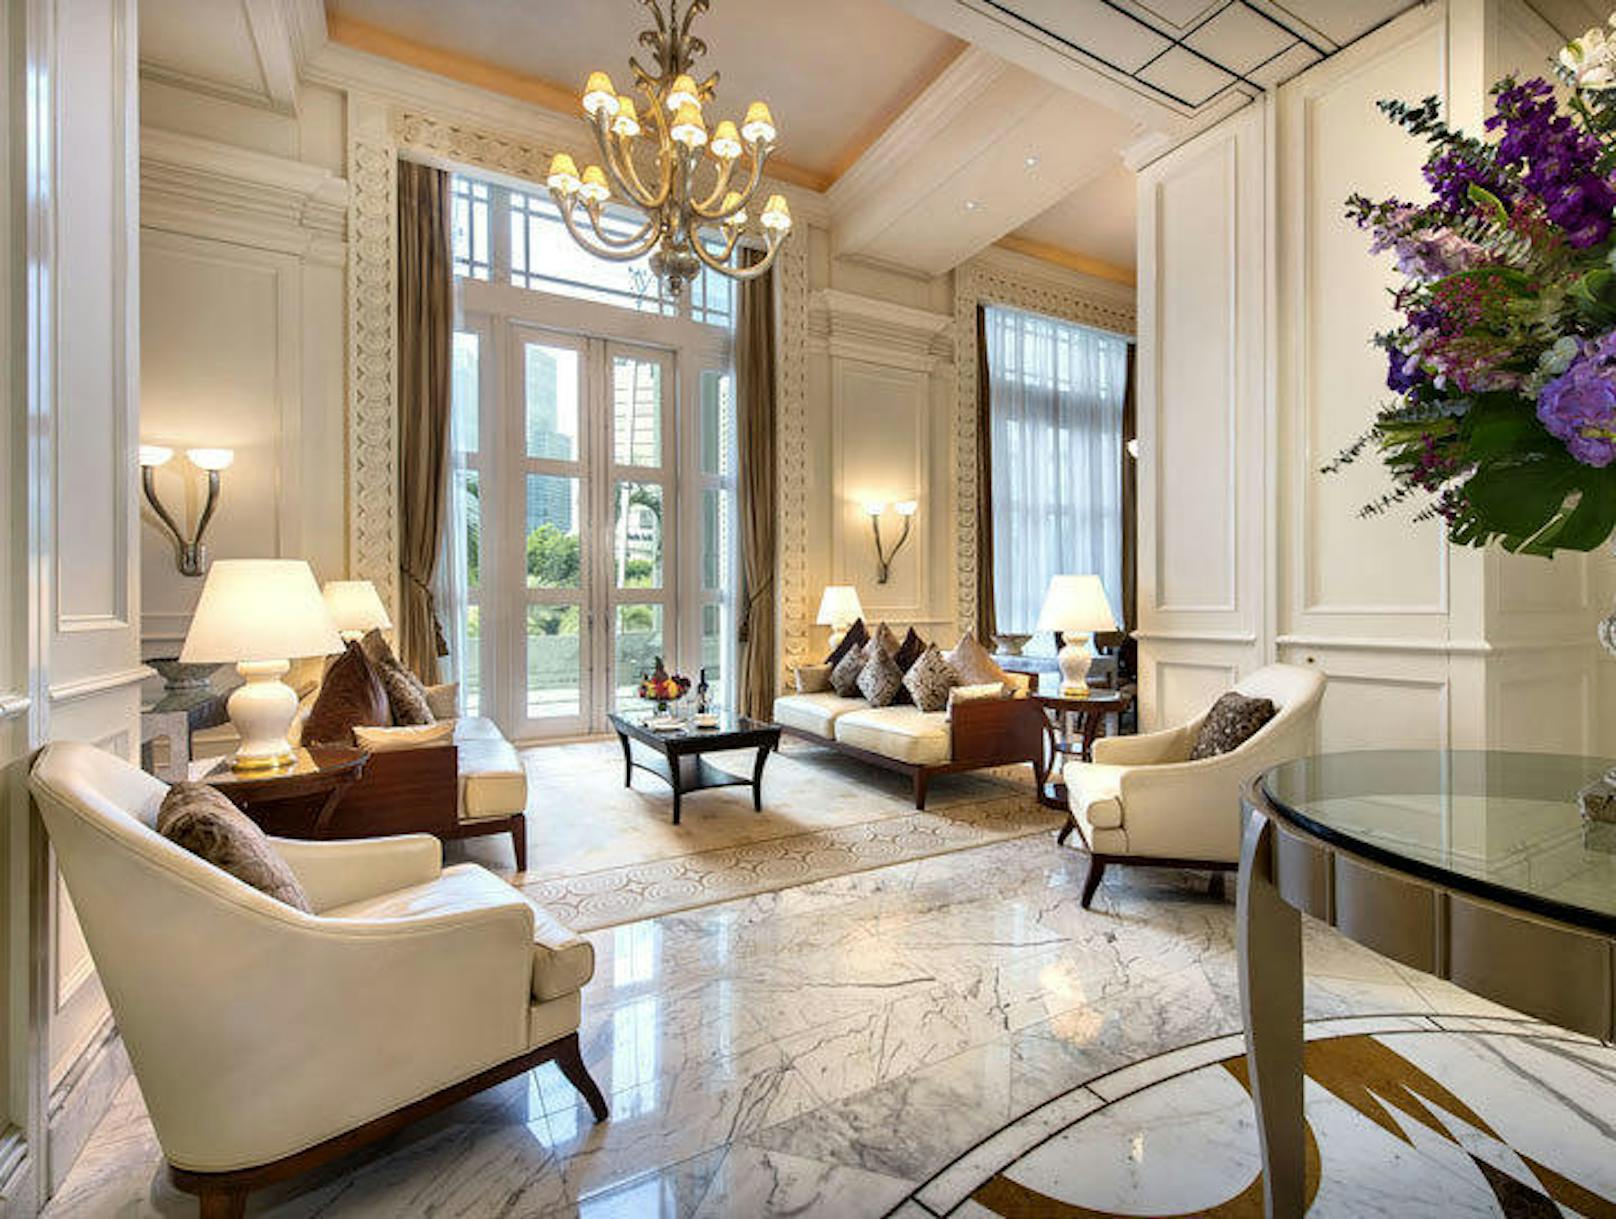 Die Suite ist über 200 Quadratmeter groß, wie es auf der Seite des Hotels heißt.